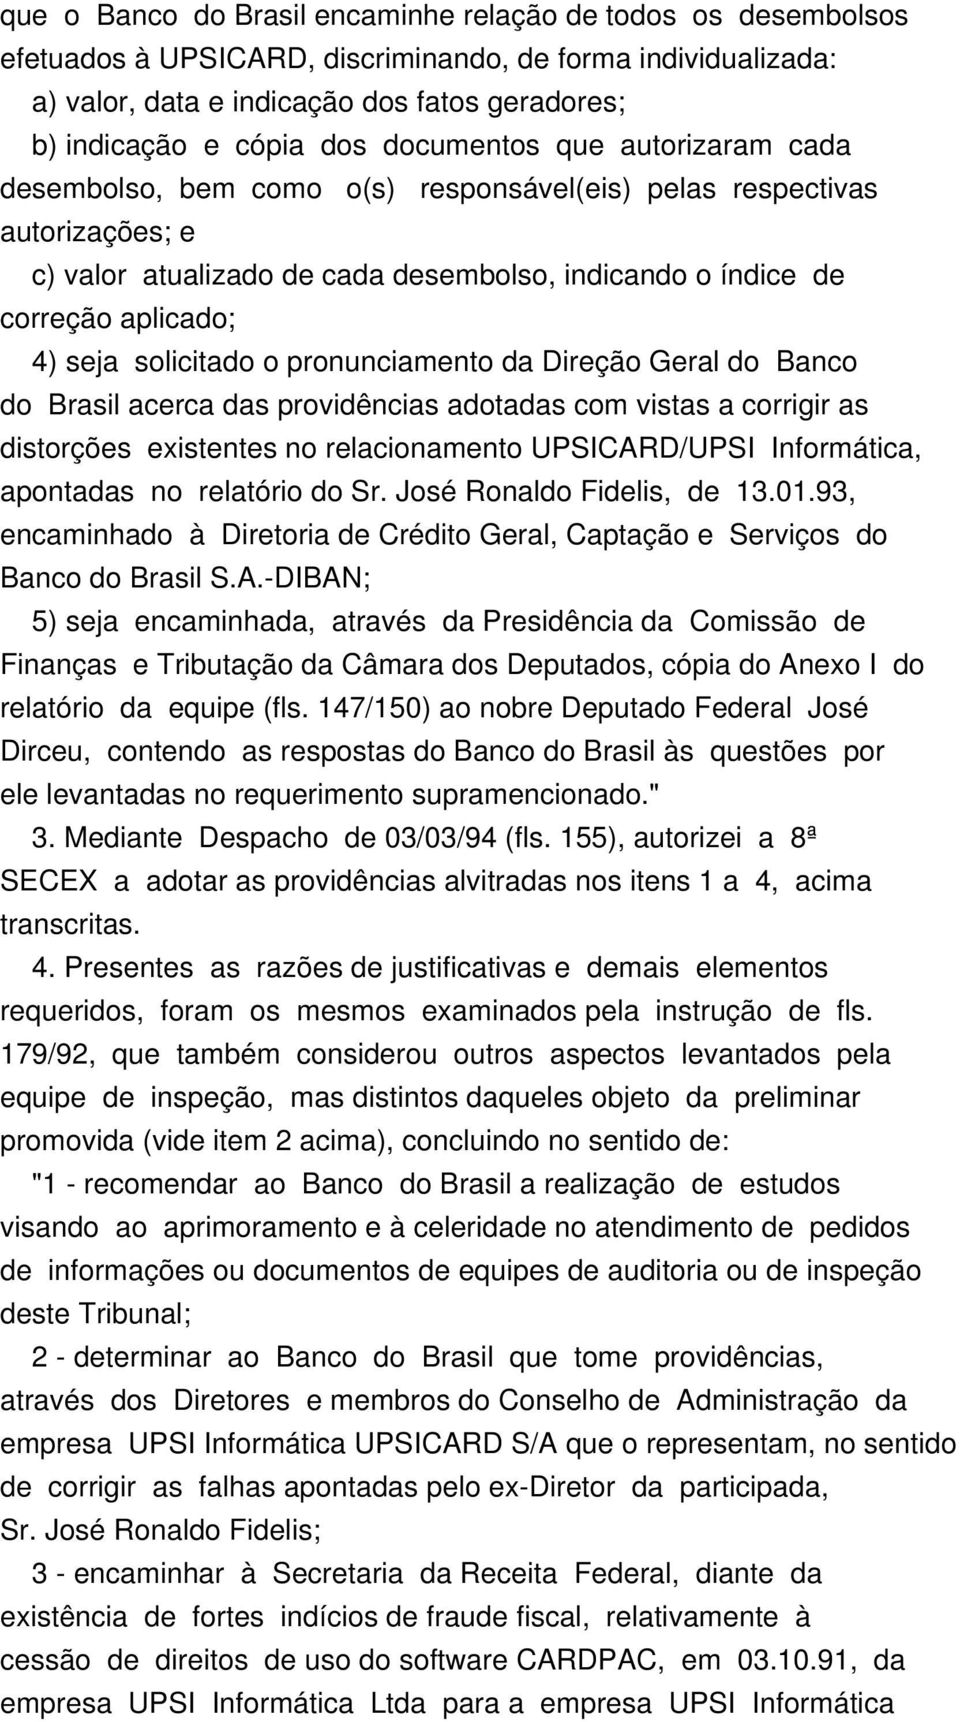 solicitado o pronunciamento da Direção Geral do Banco do Brasil acerca das providências adotadas com vistas a corrigir as distorções existentes no relacionamento UPSICARD/UPSI Informática, apontadas